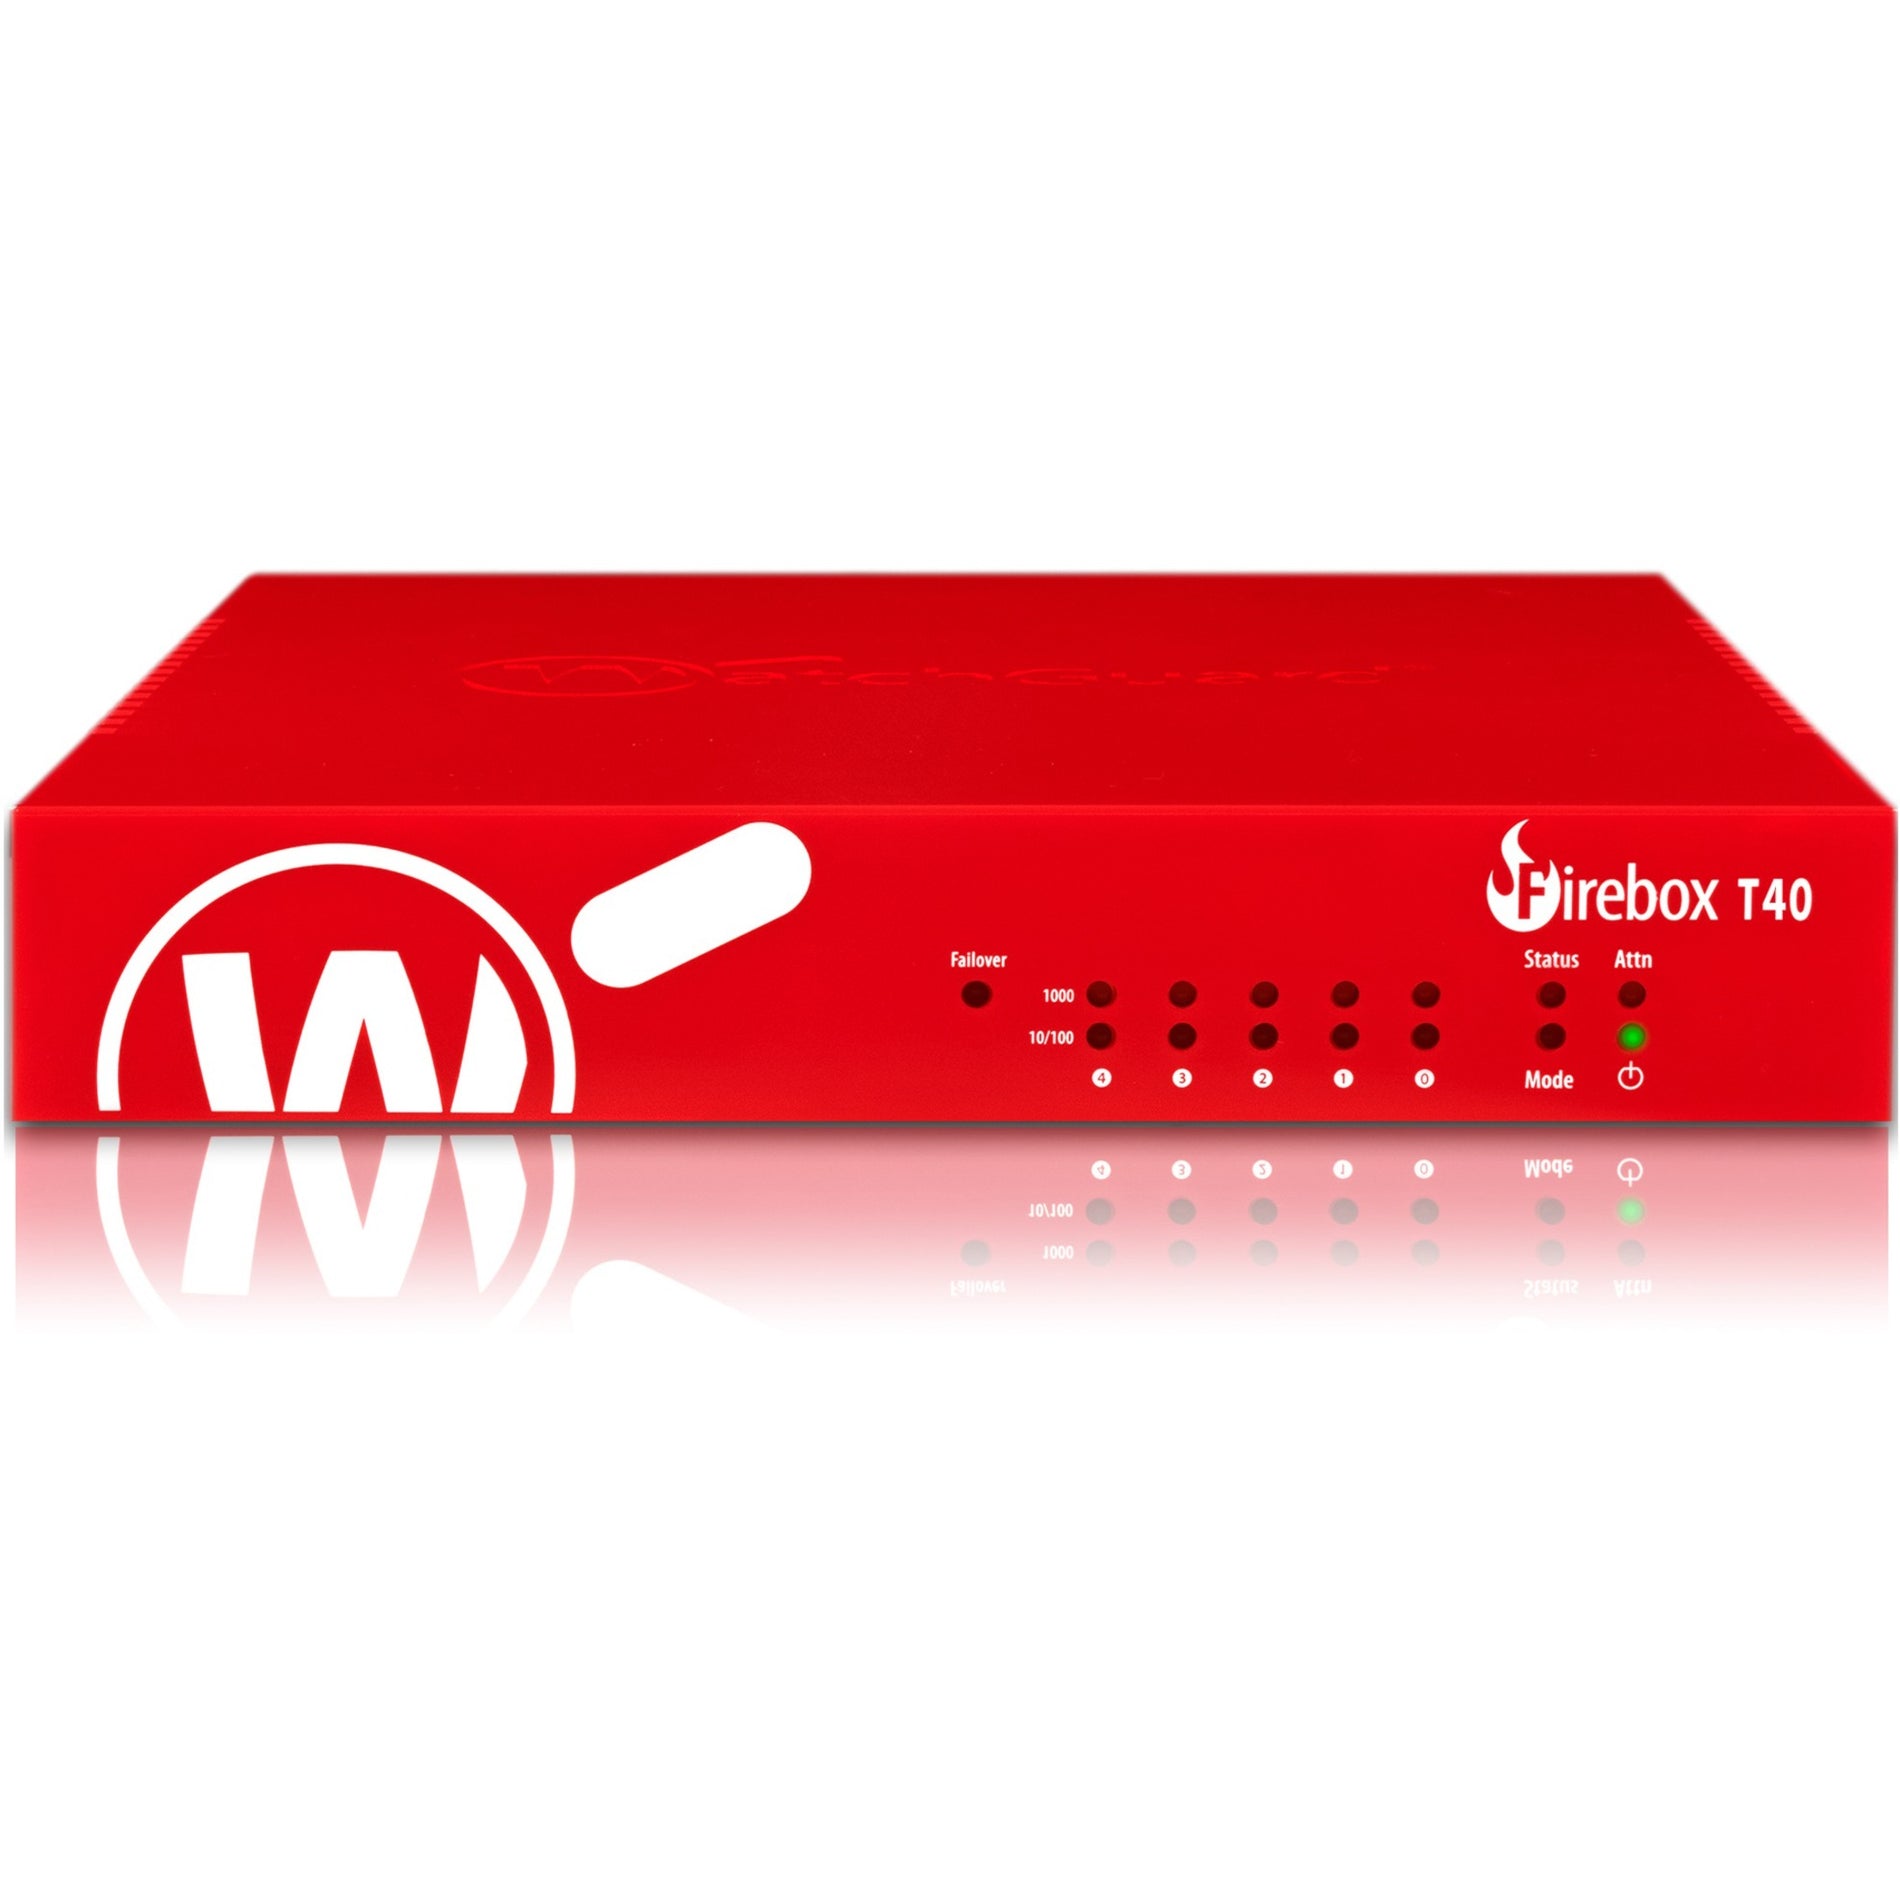 WatchGuard Firebox T40 Network Security/Firewall Appliance [Discontinued]